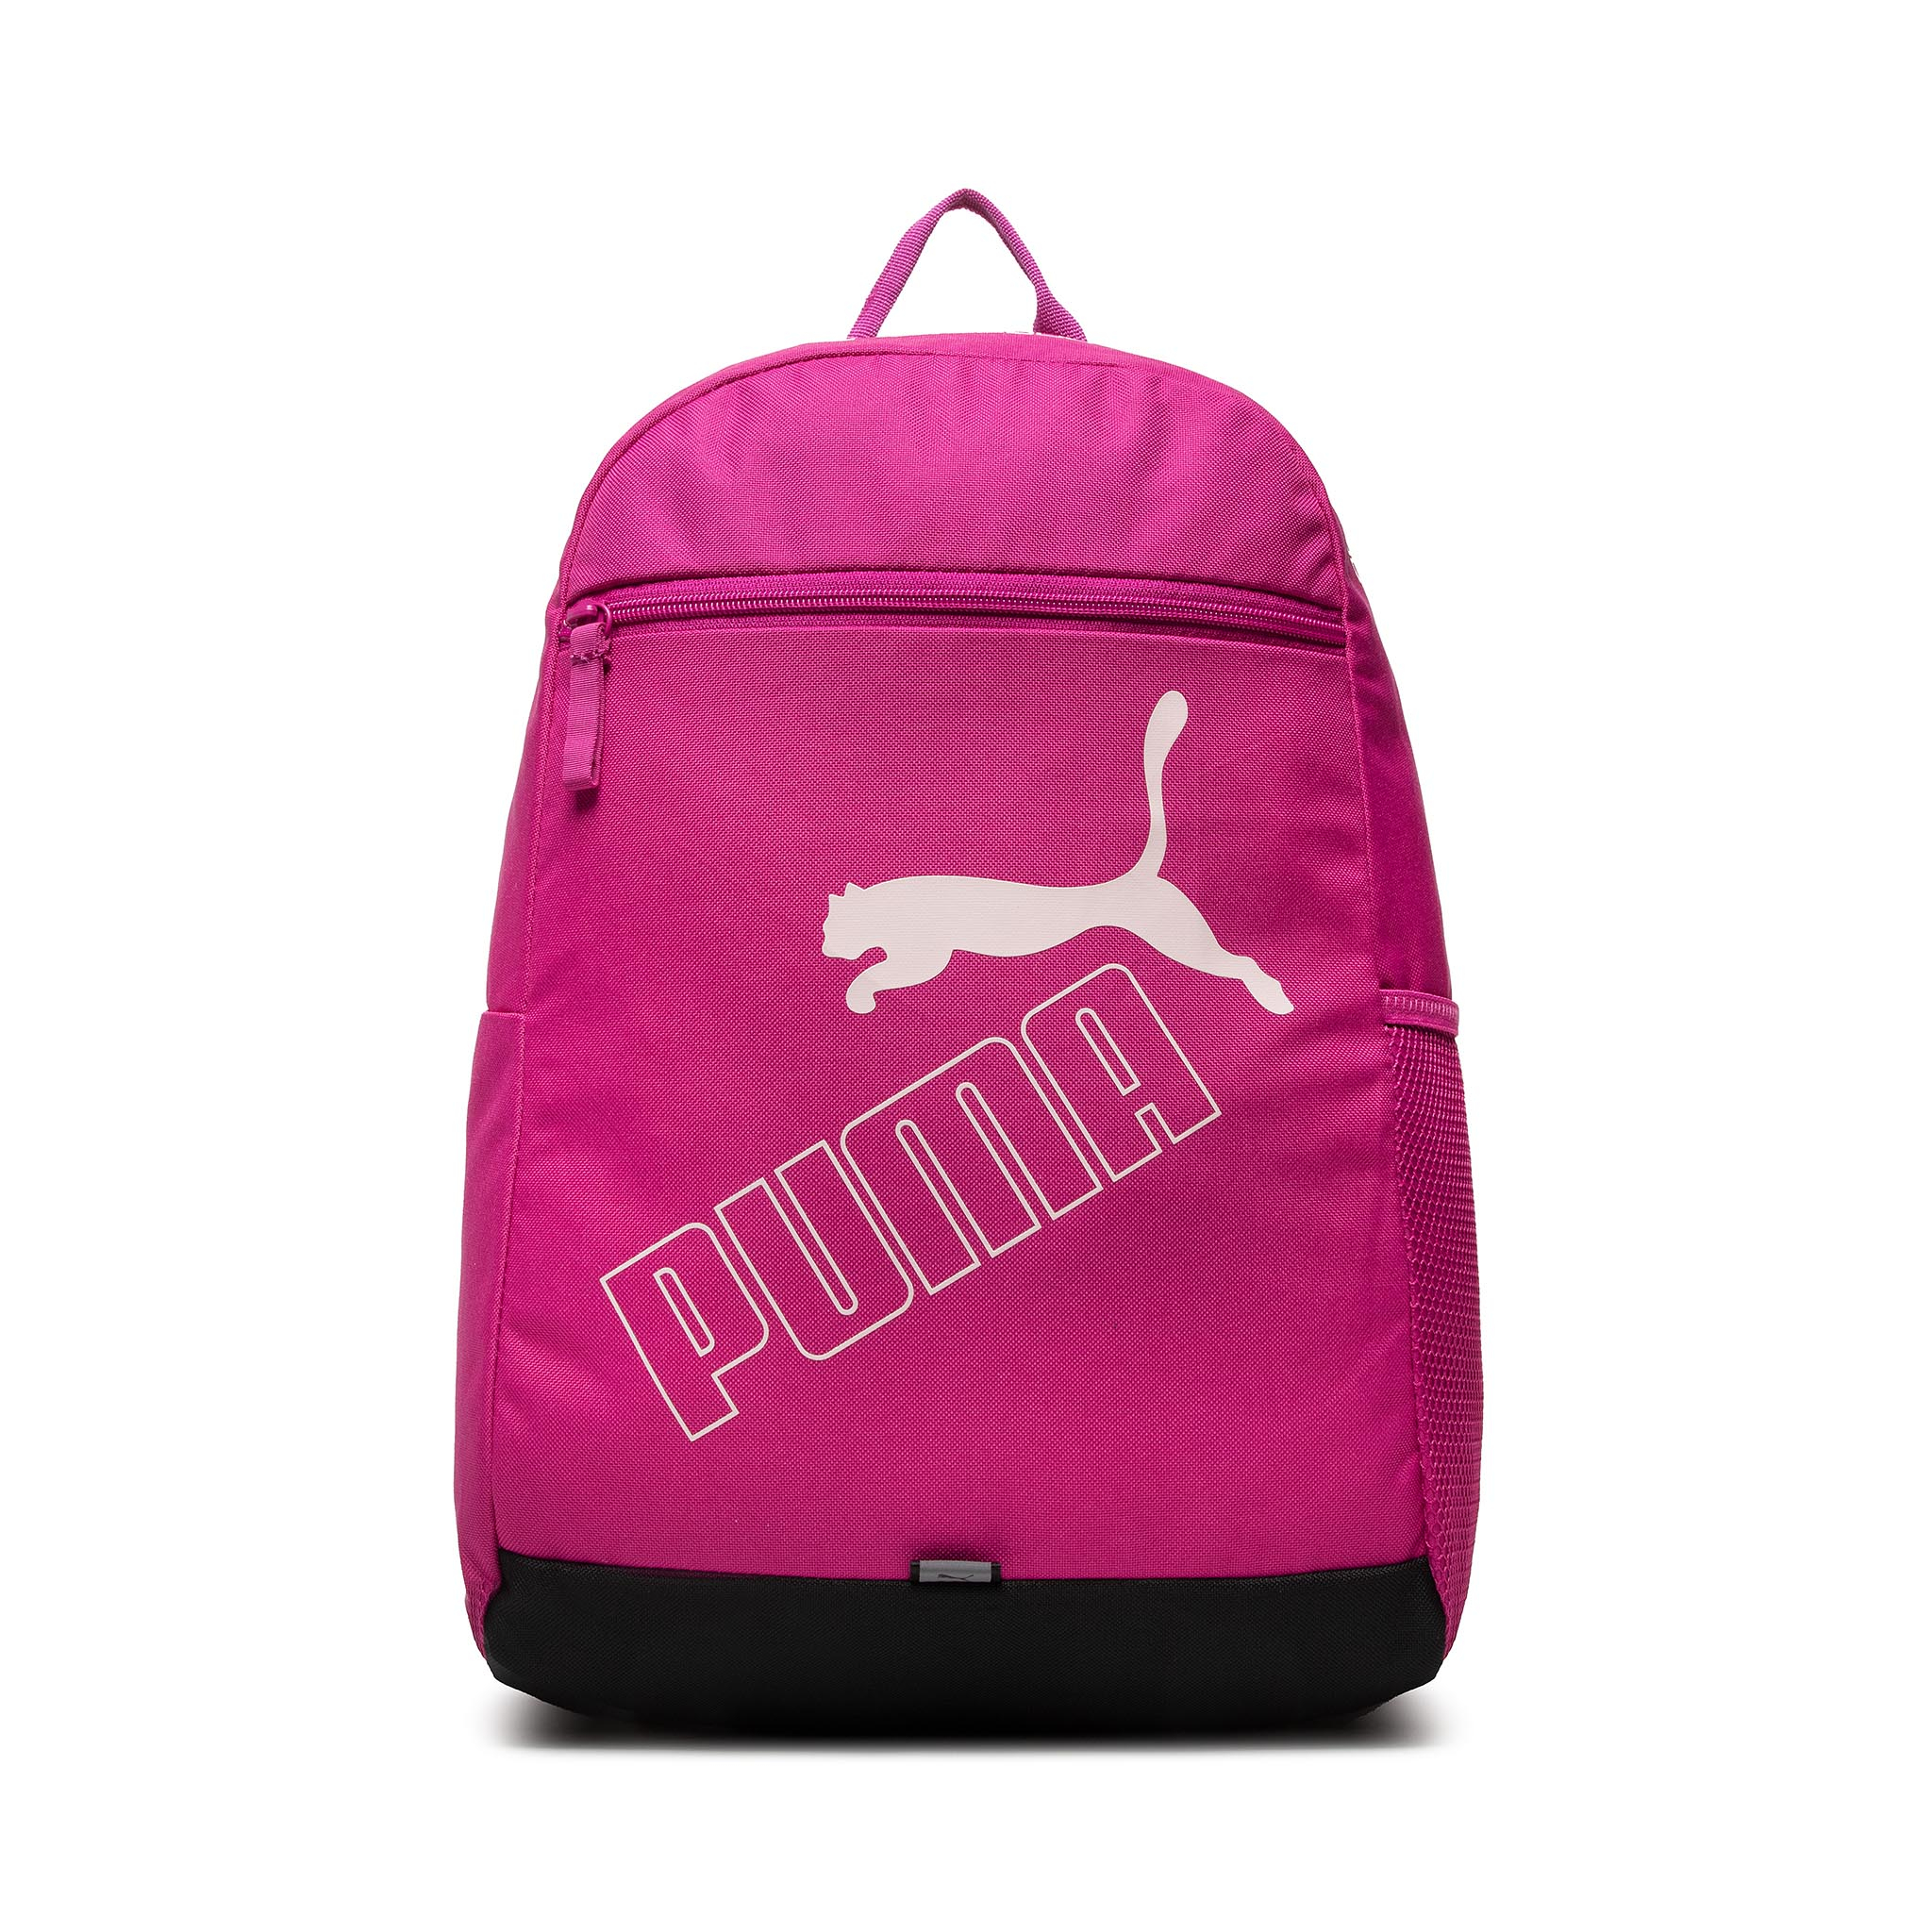 Plecak PUMA - Phase Backpack II 772951 18 Festival Fuchsia Puma